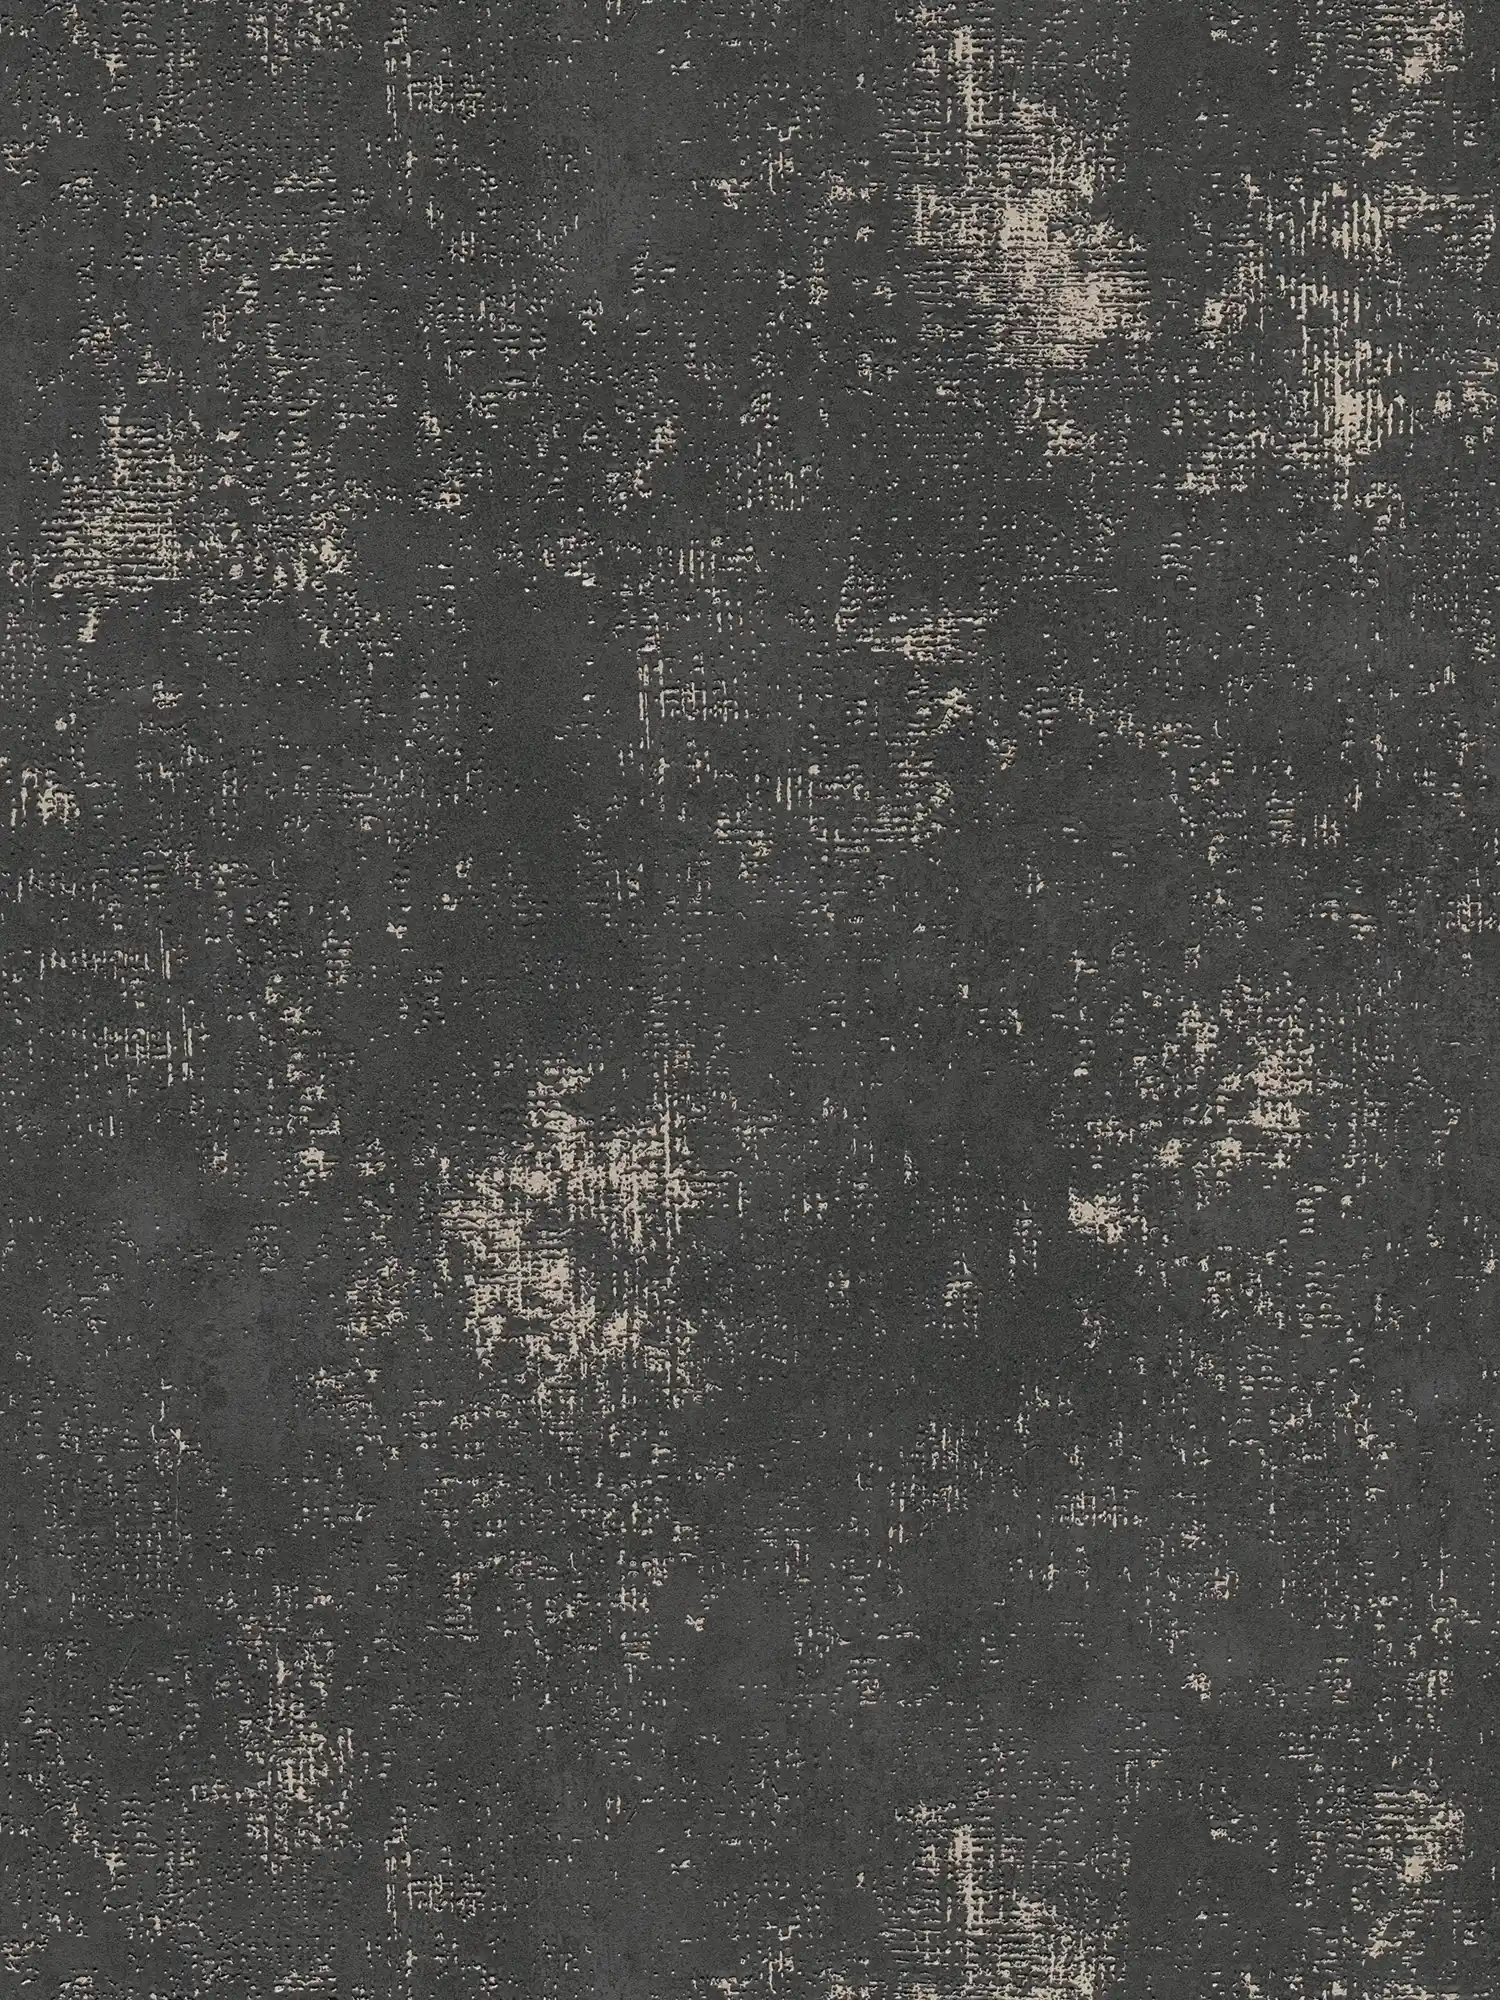 Black wallpaper rustic textured look with metallic effect
